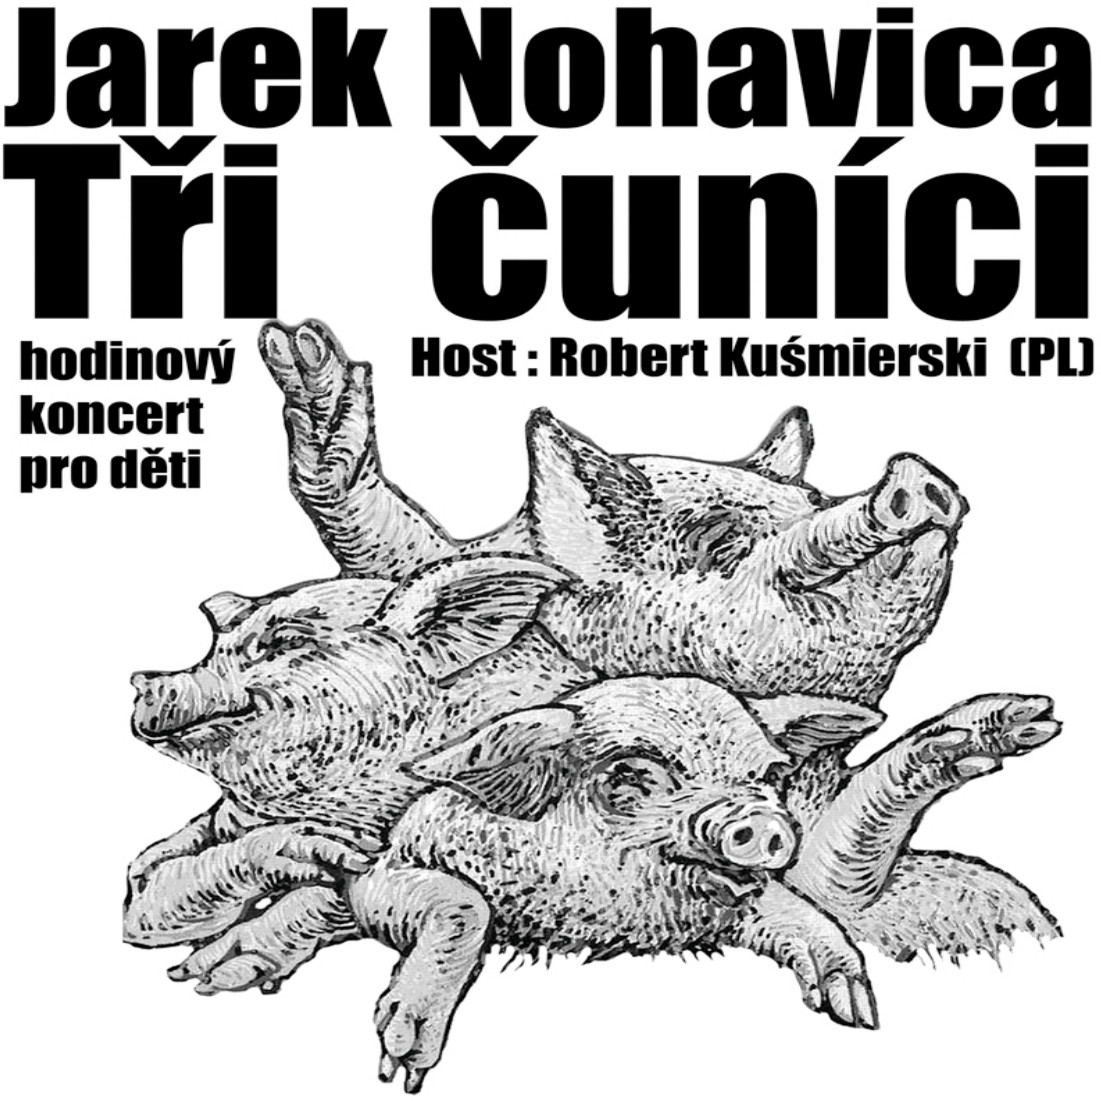 JAREK NOHAVICA & ROBERT KUŚMIERSKI/TŘI ČUNÍCI - HODINOVÝ KONCERT PRO DĚTI A JEJICH RODIČE/- koncert Olomouc -U-Klub
 
Olomouc